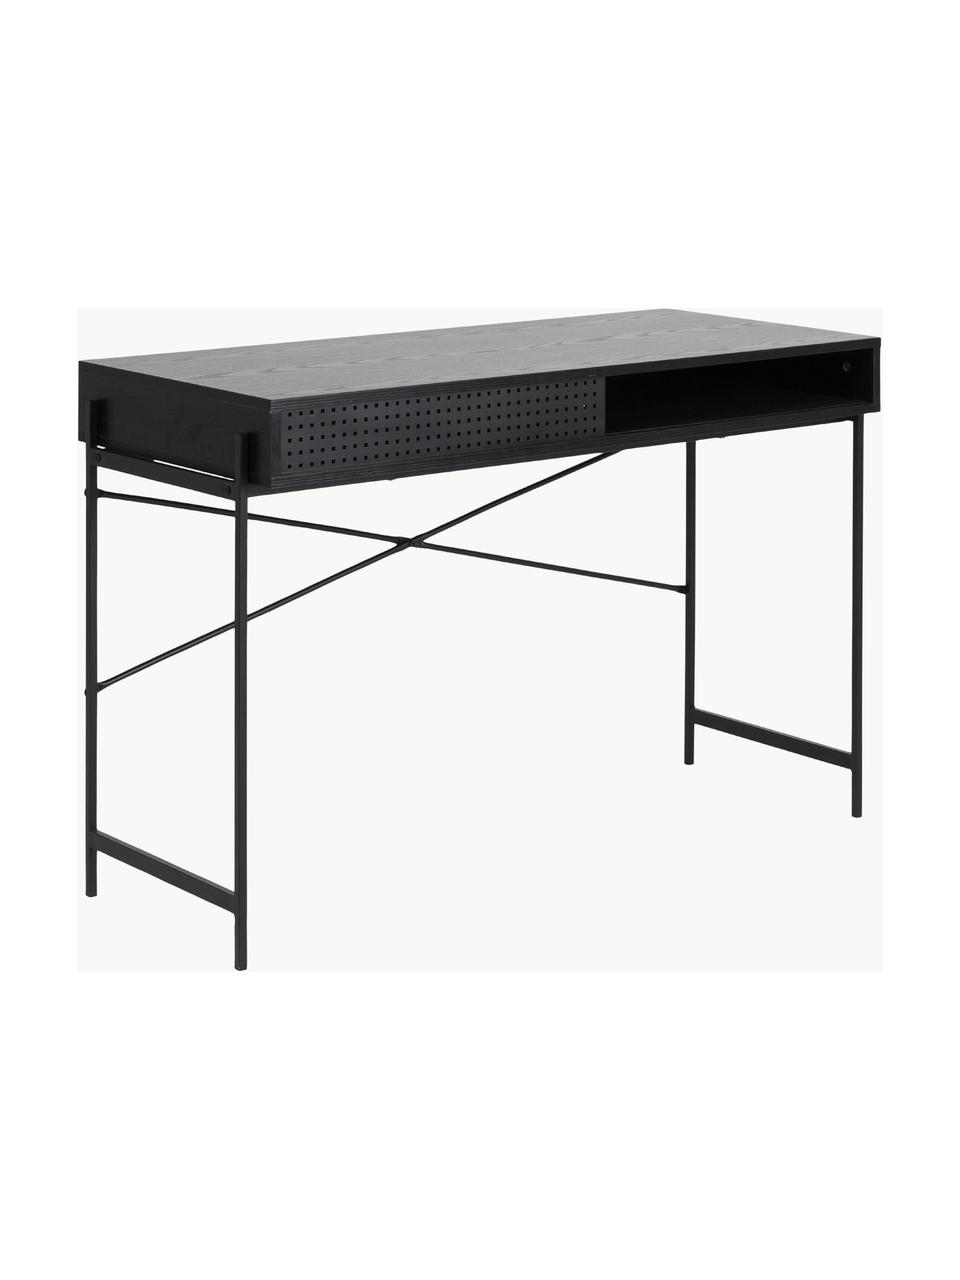 Úzký psací stůl Angus, Černá, Š 110 cm, H 50 cm